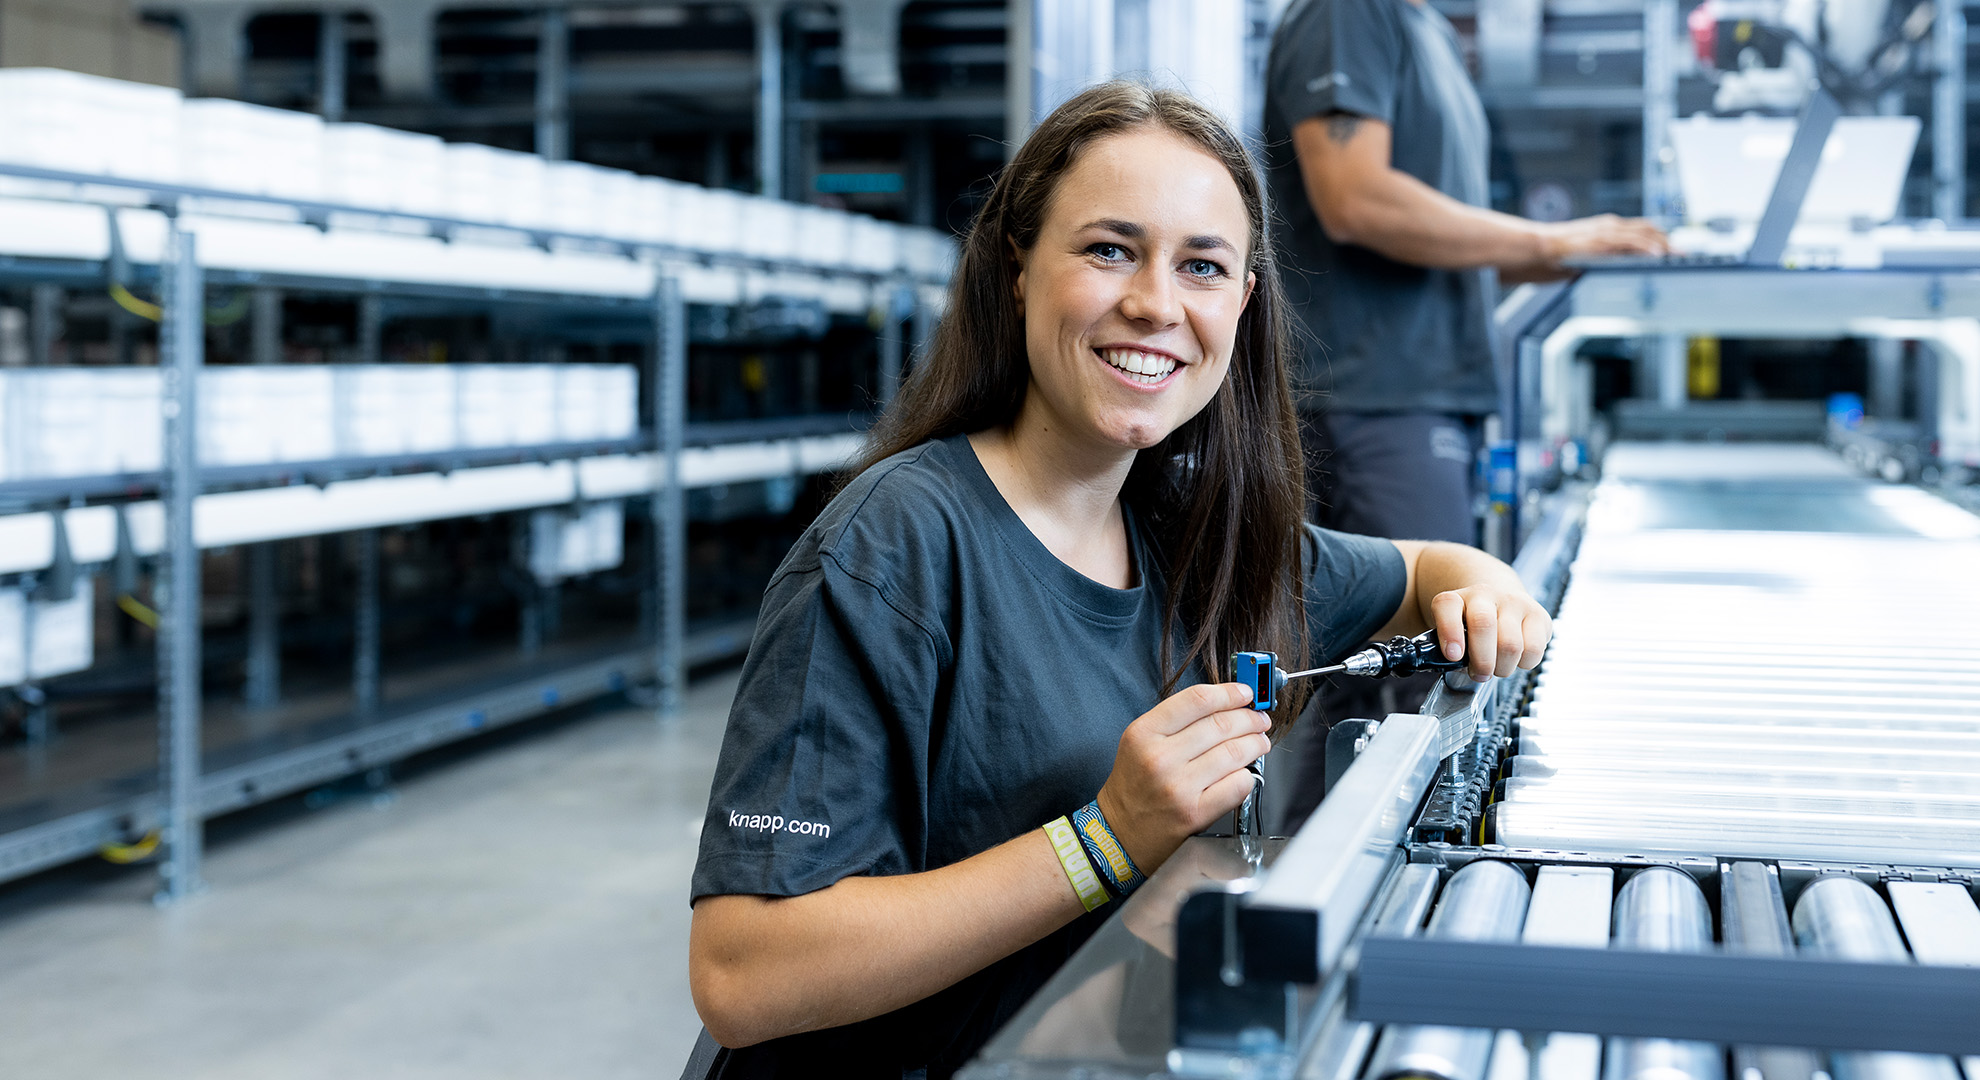 Bettina Pretterhofer lächelt während dem Inbetriebnehmen einer Anlage freundlich in die Kamera